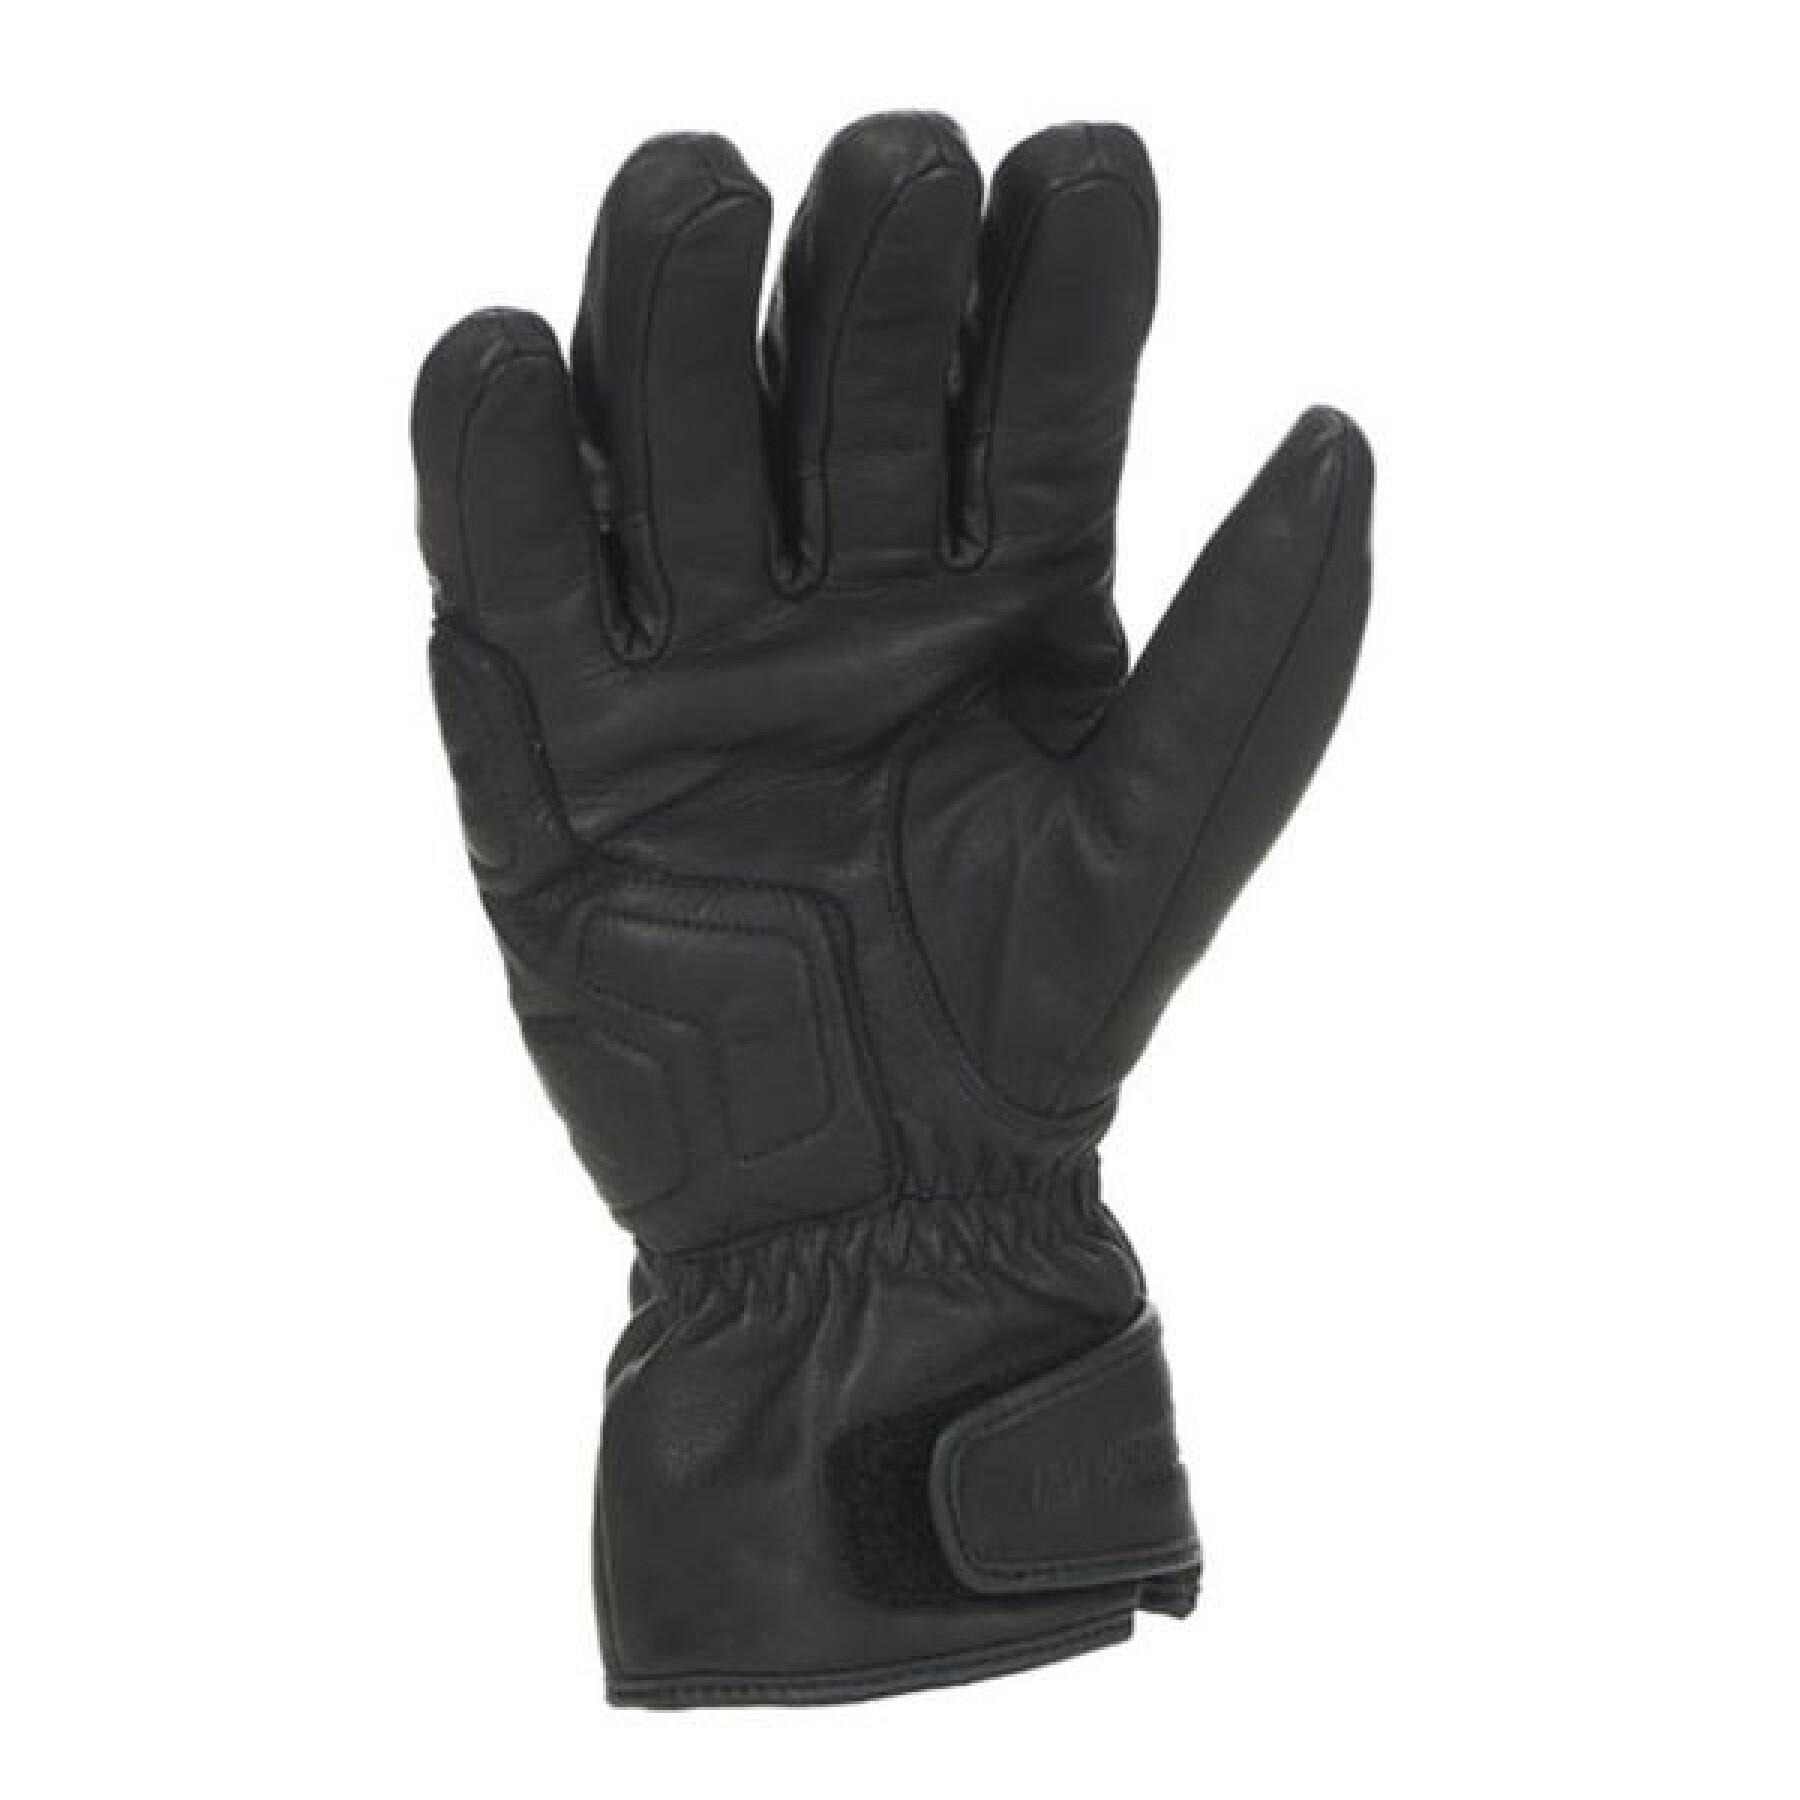 Mid-season motorcycle gloves Bering KEN